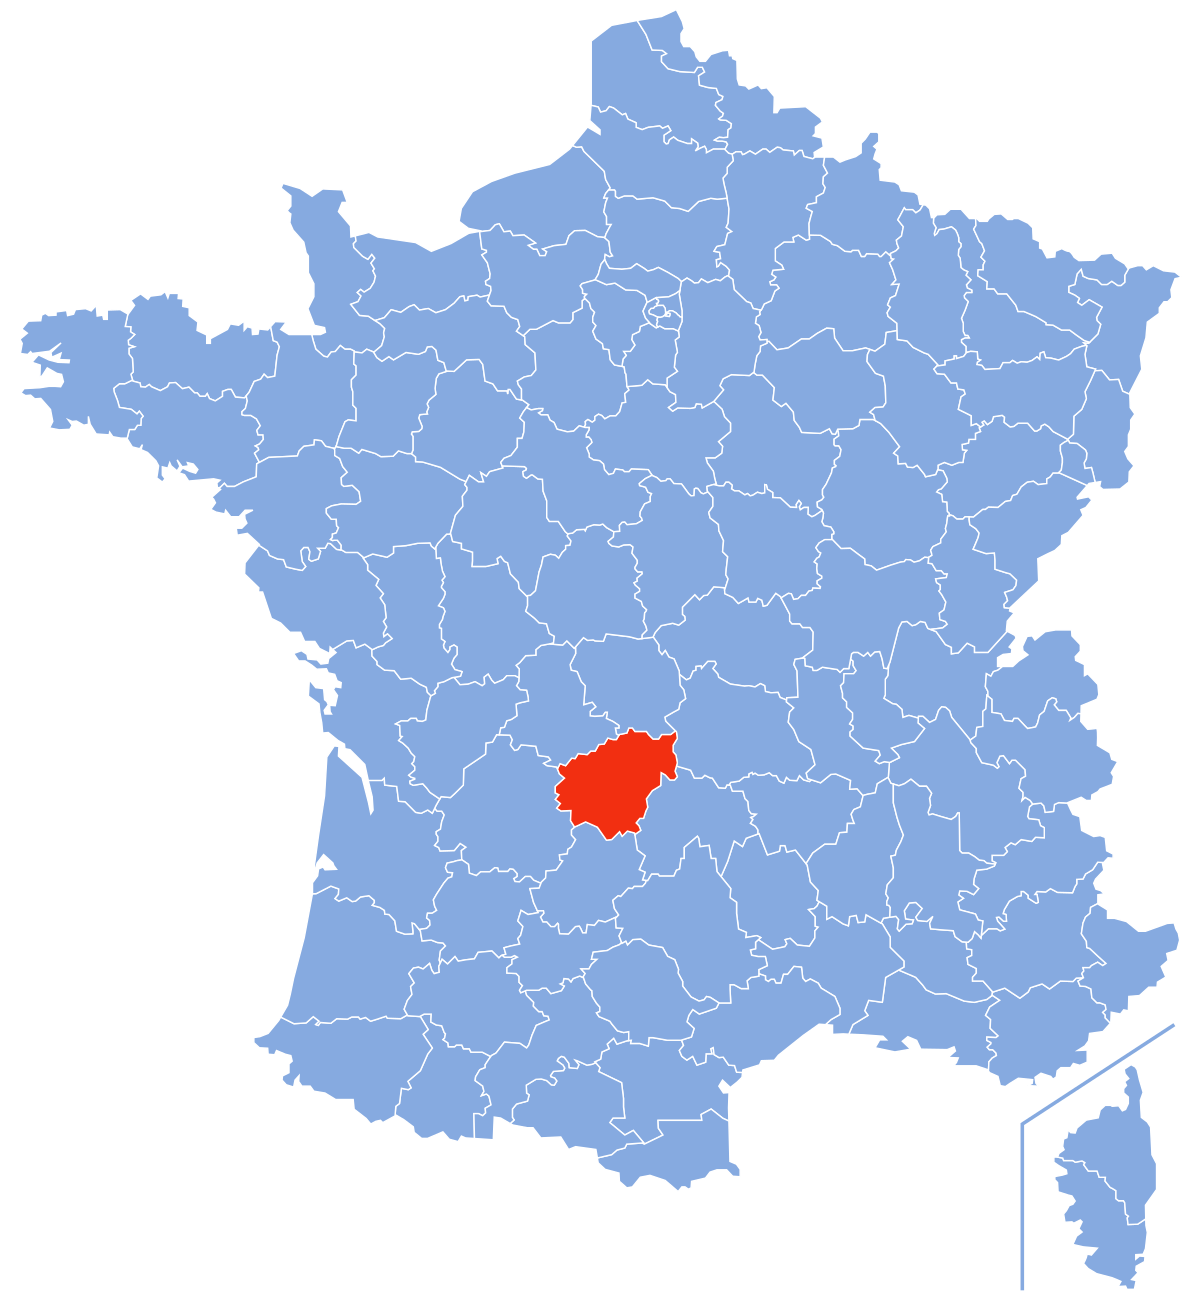 correze sur carte de france Corrèze (département) — Wikipédia